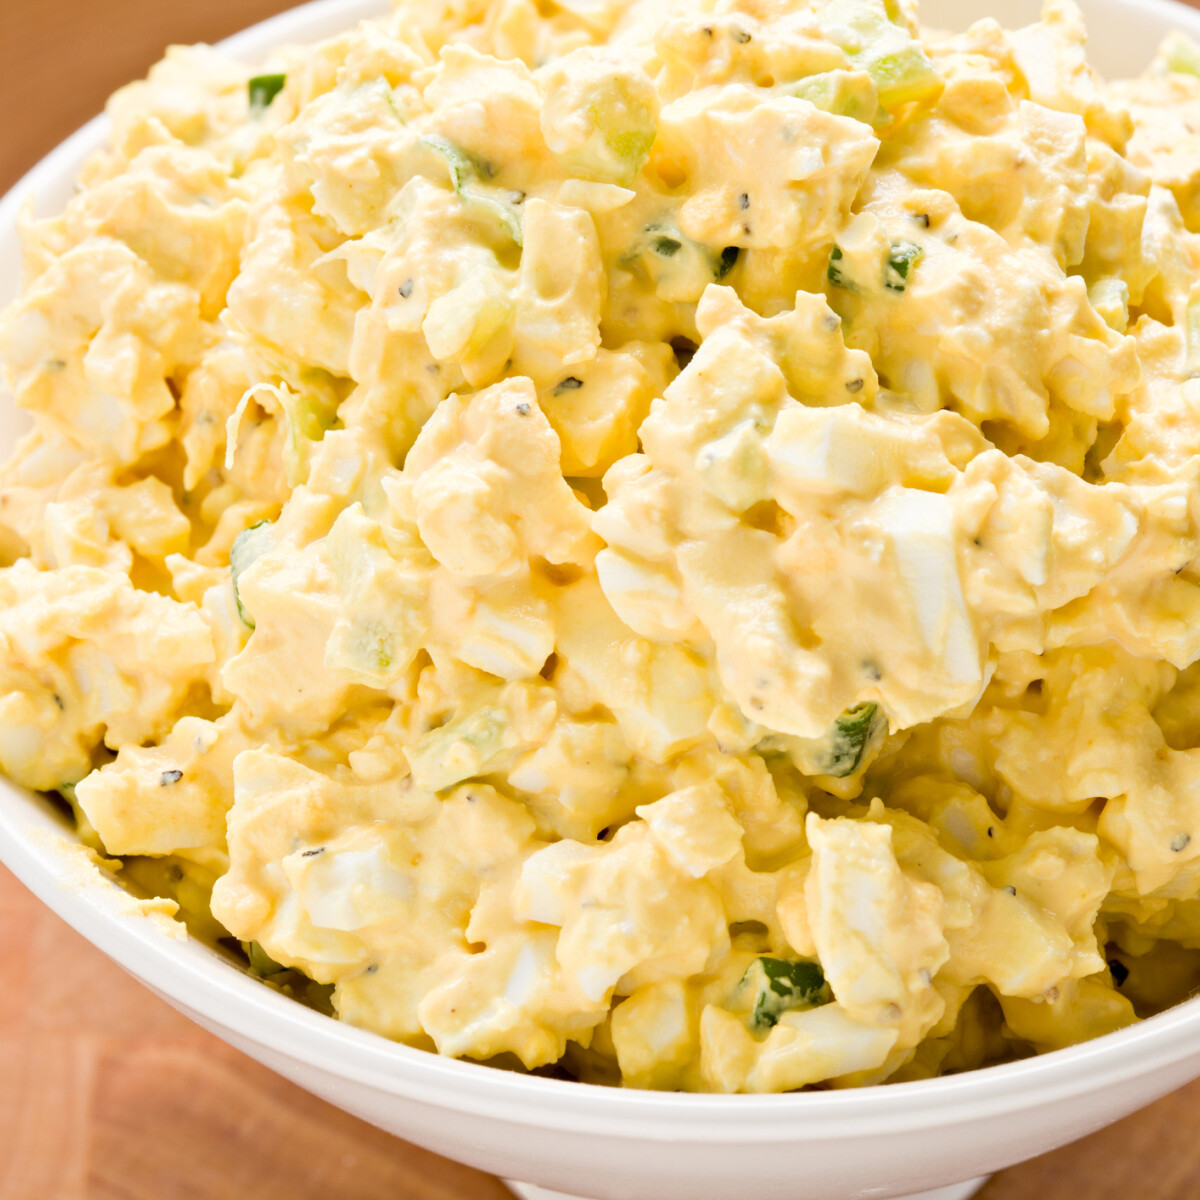 Így ehetsz vegánként is „tojásos" fogásokat